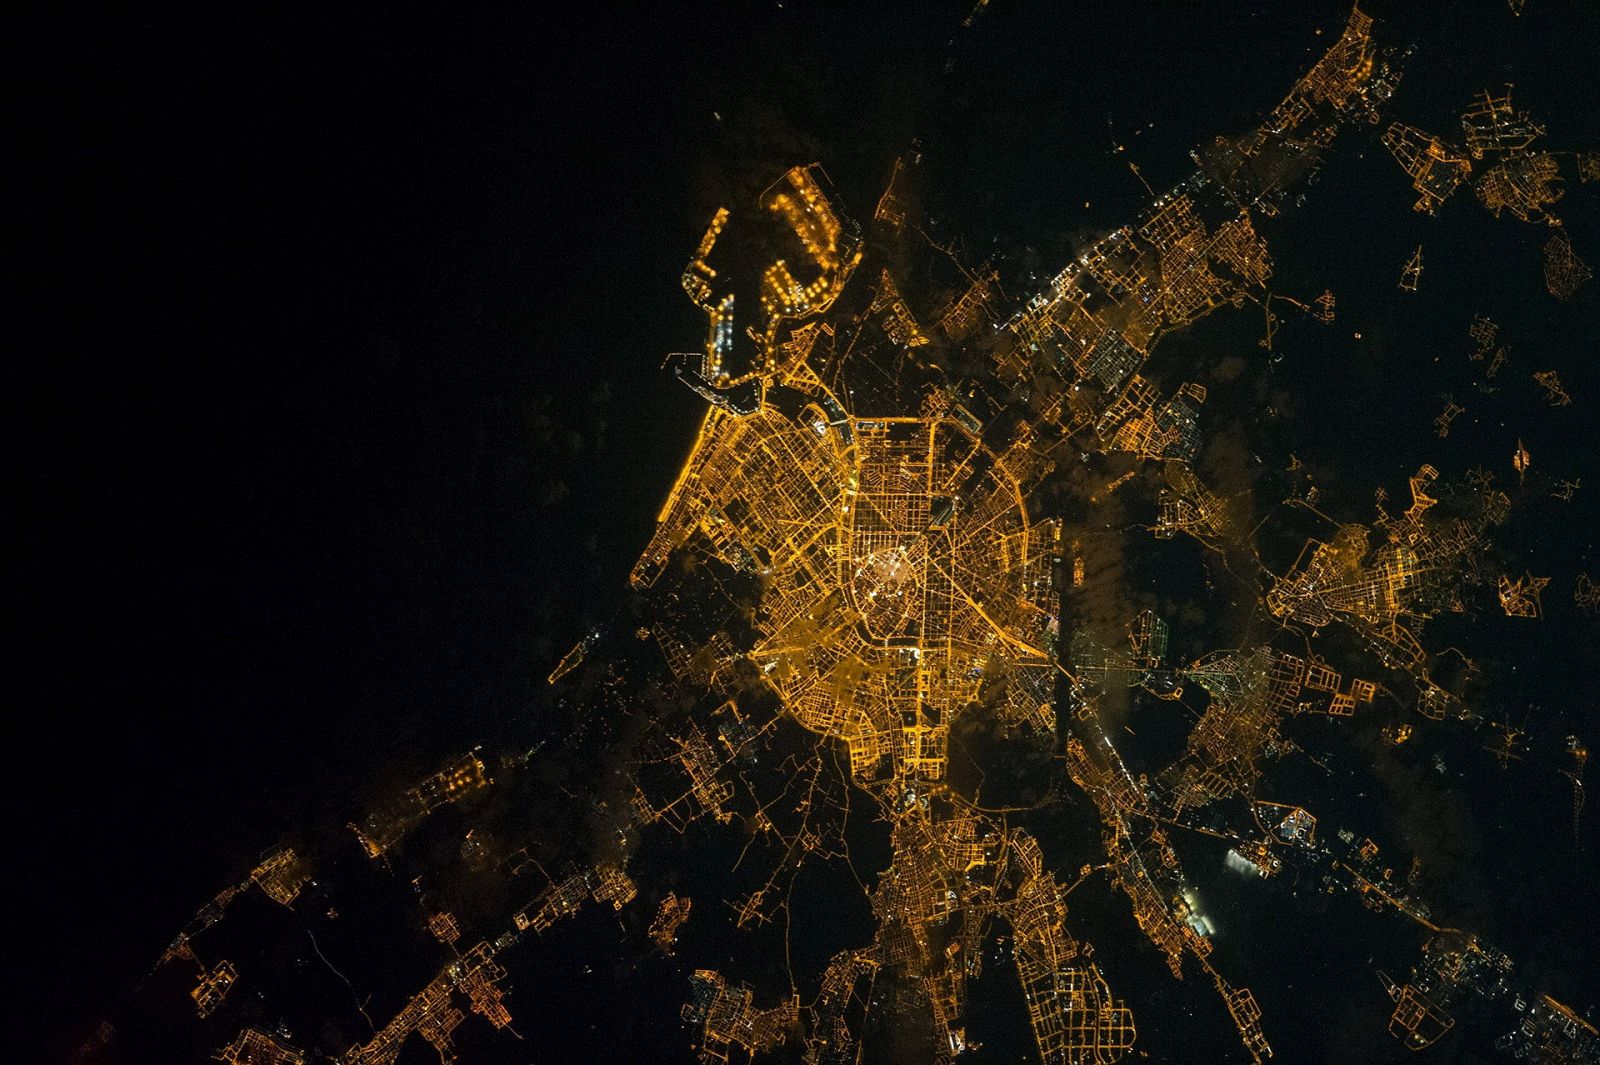 La imagen de Valencia, tomada desde la EEI, a 300 kilómetros de altura desde la Tierra.